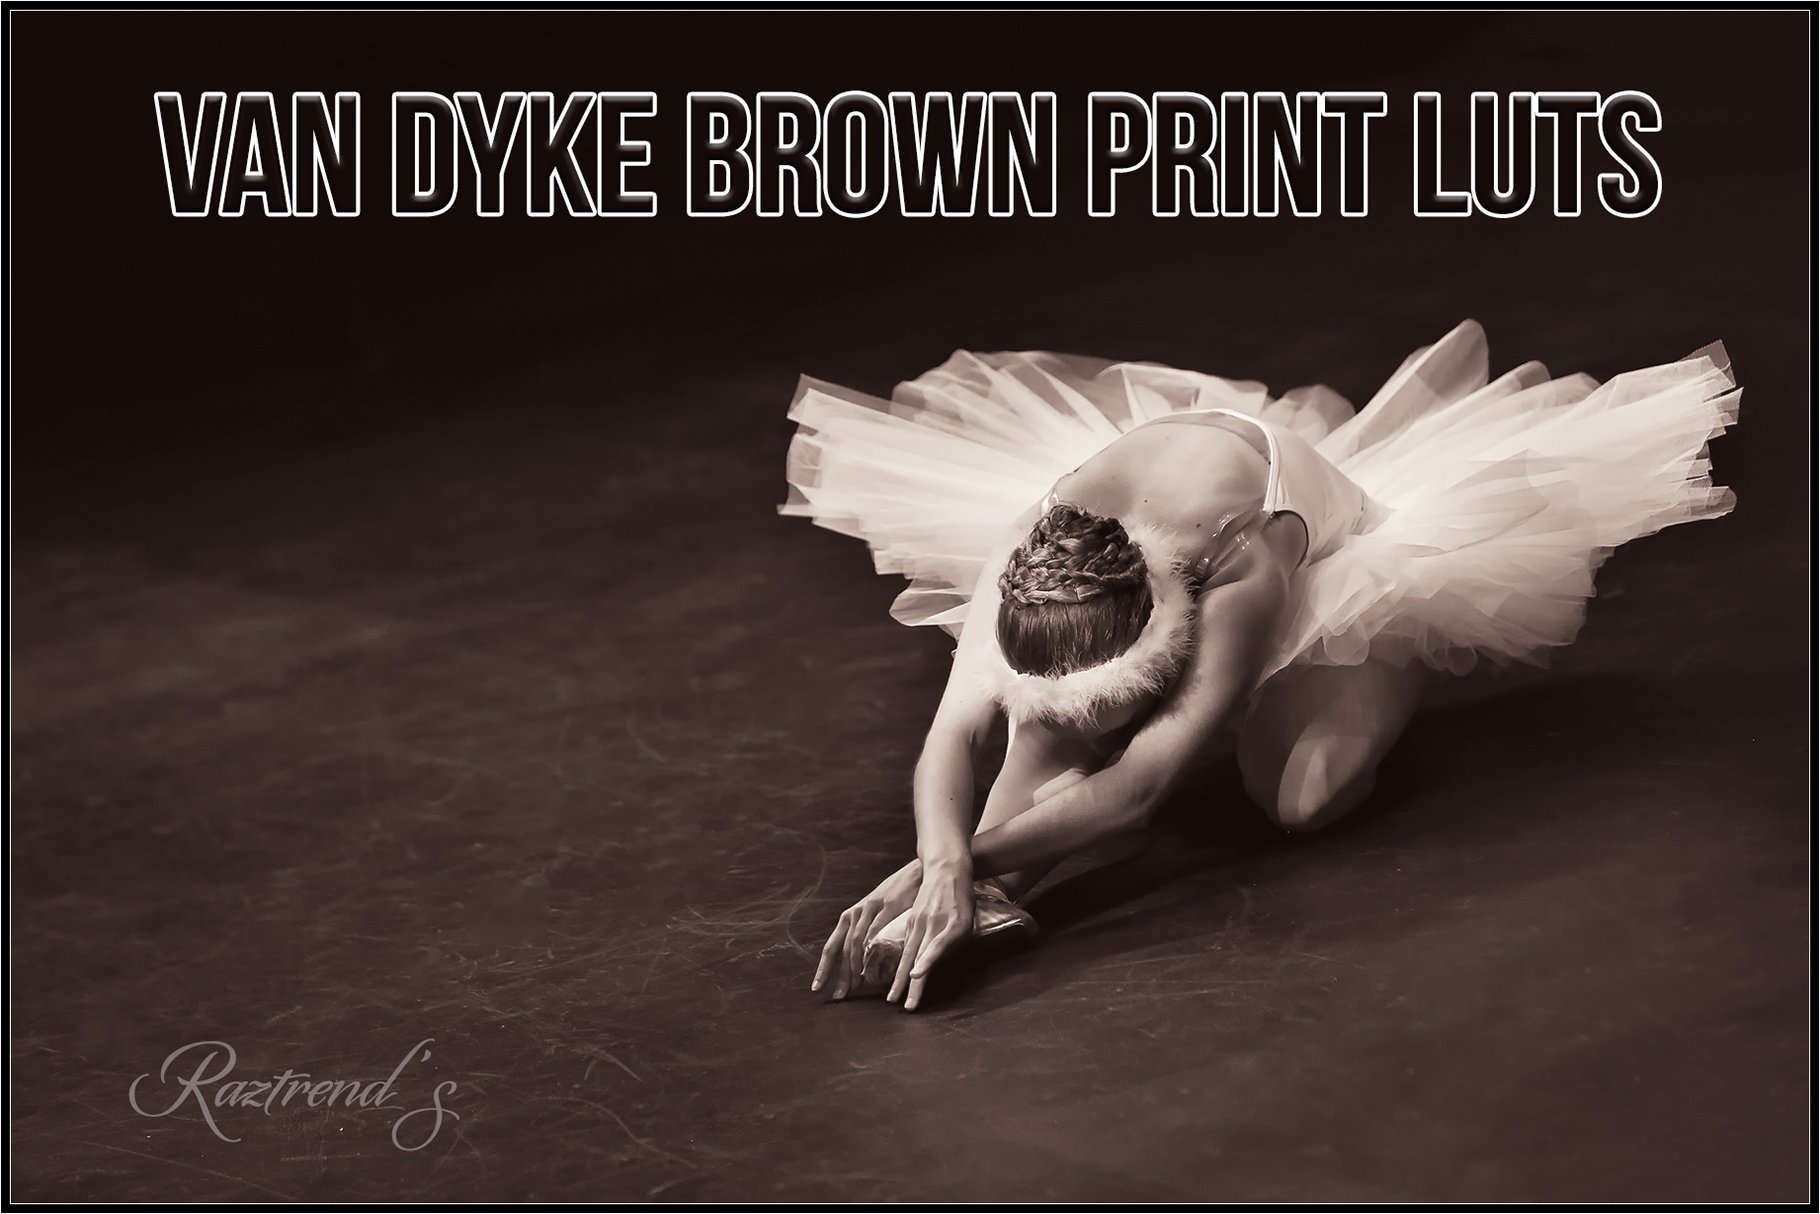 Van Dyke Brown Print LUTscover image.